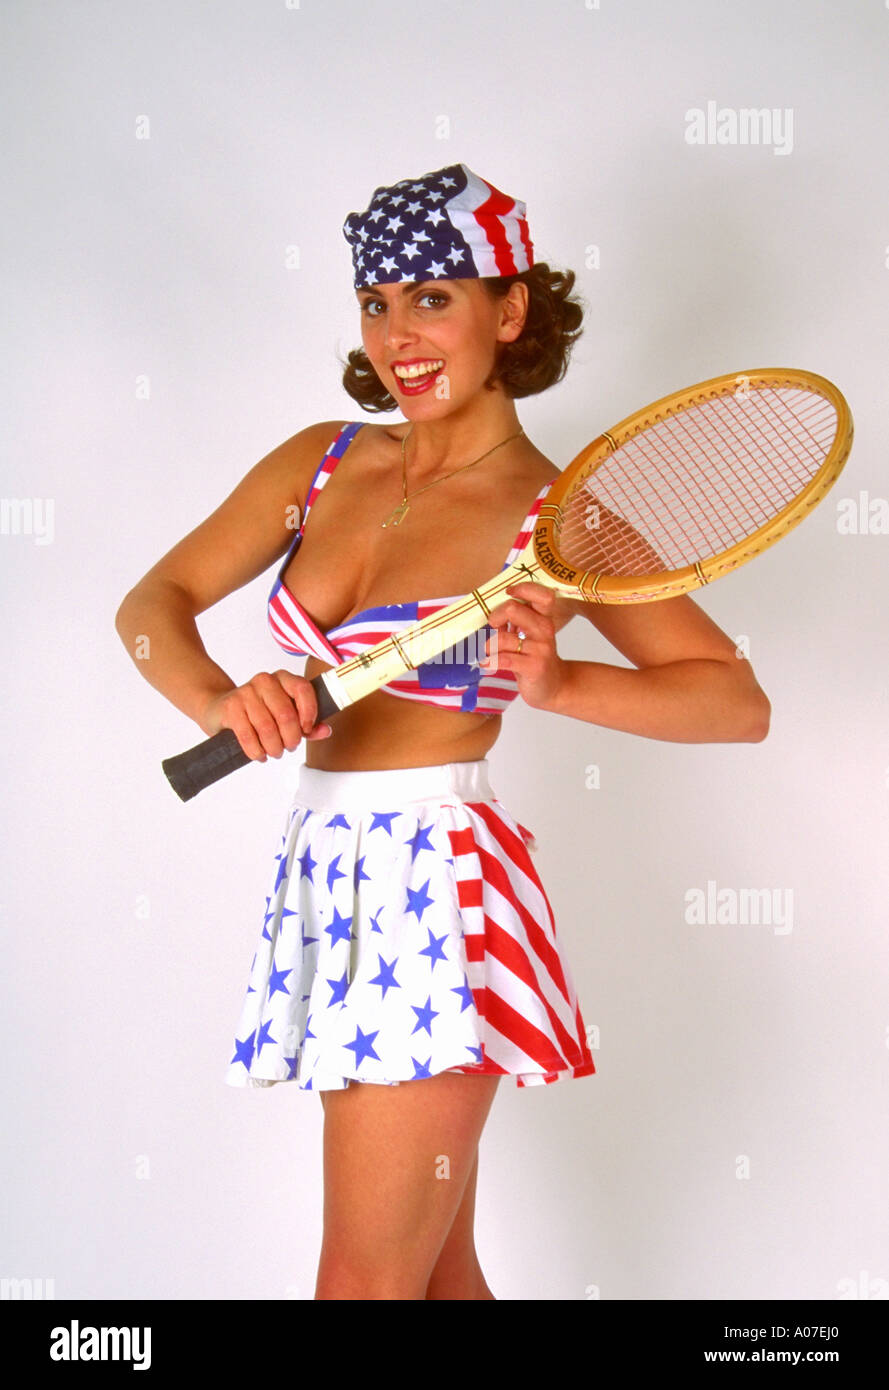 Porträt einer jungen Frau in einem Tennis-Outfit mit einem Tennisschläger Stockfoto